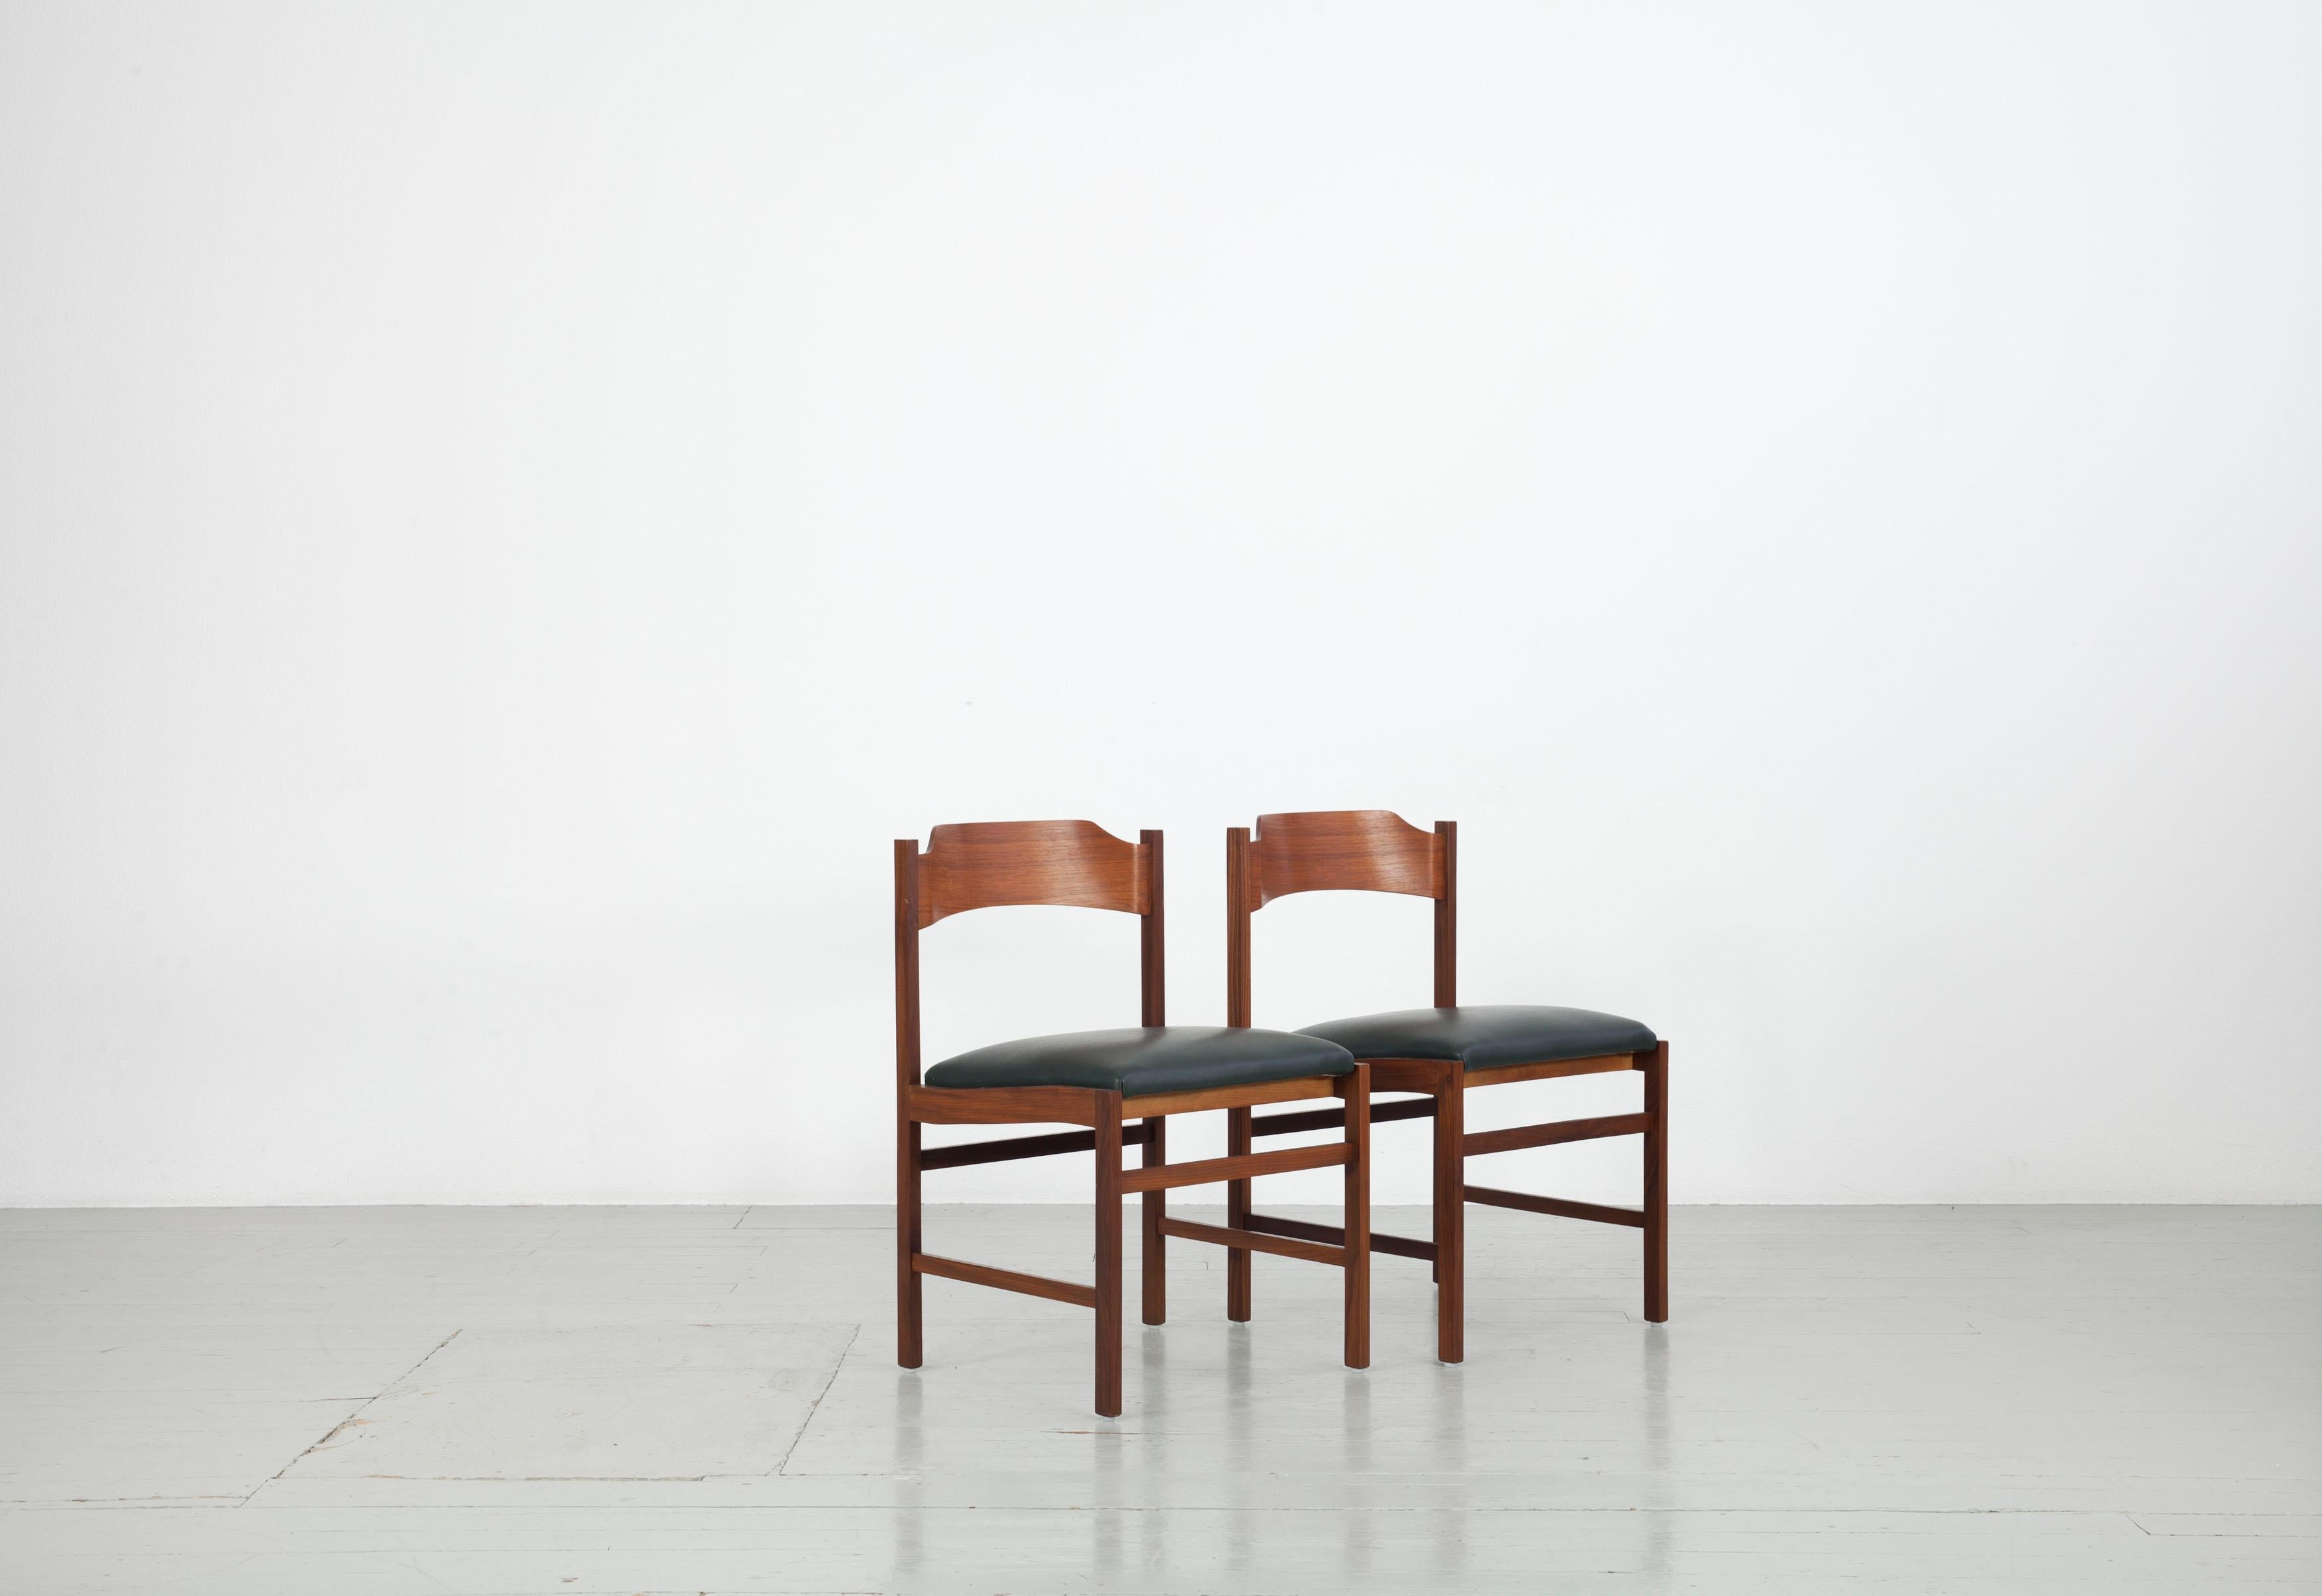 Cet ensemble de deux chaises en bois a été fabriqué en Italie dans les années 1960. La structure est en placage de noyer, l'assise et le dossier sont recouverts de similicuir vert foncé. Les deux chaises sont en très bon état vintage.

 